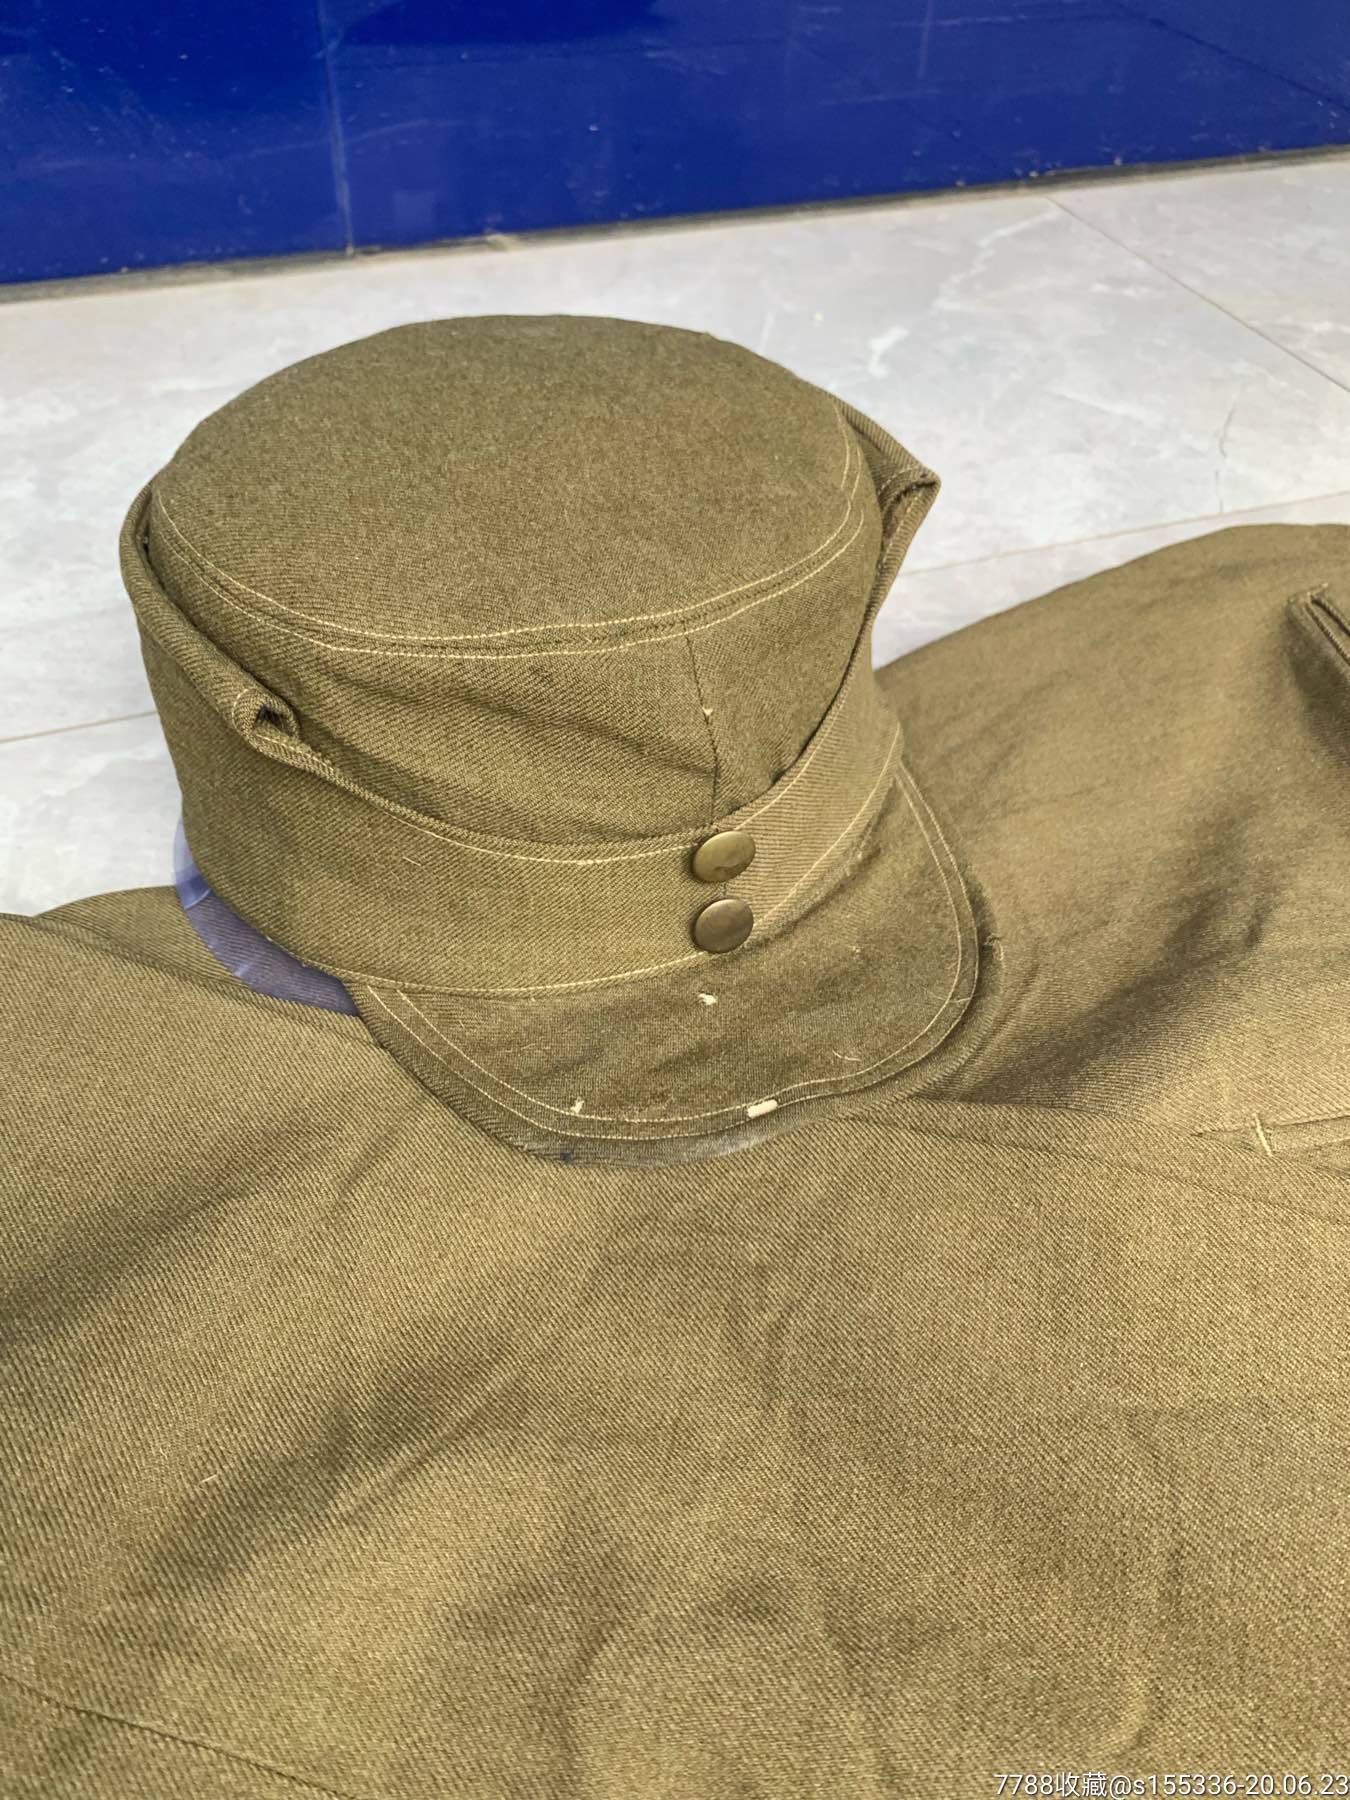 【抗战收藏1940年】国军高级军官帽和裤子-帽子-7788收藏